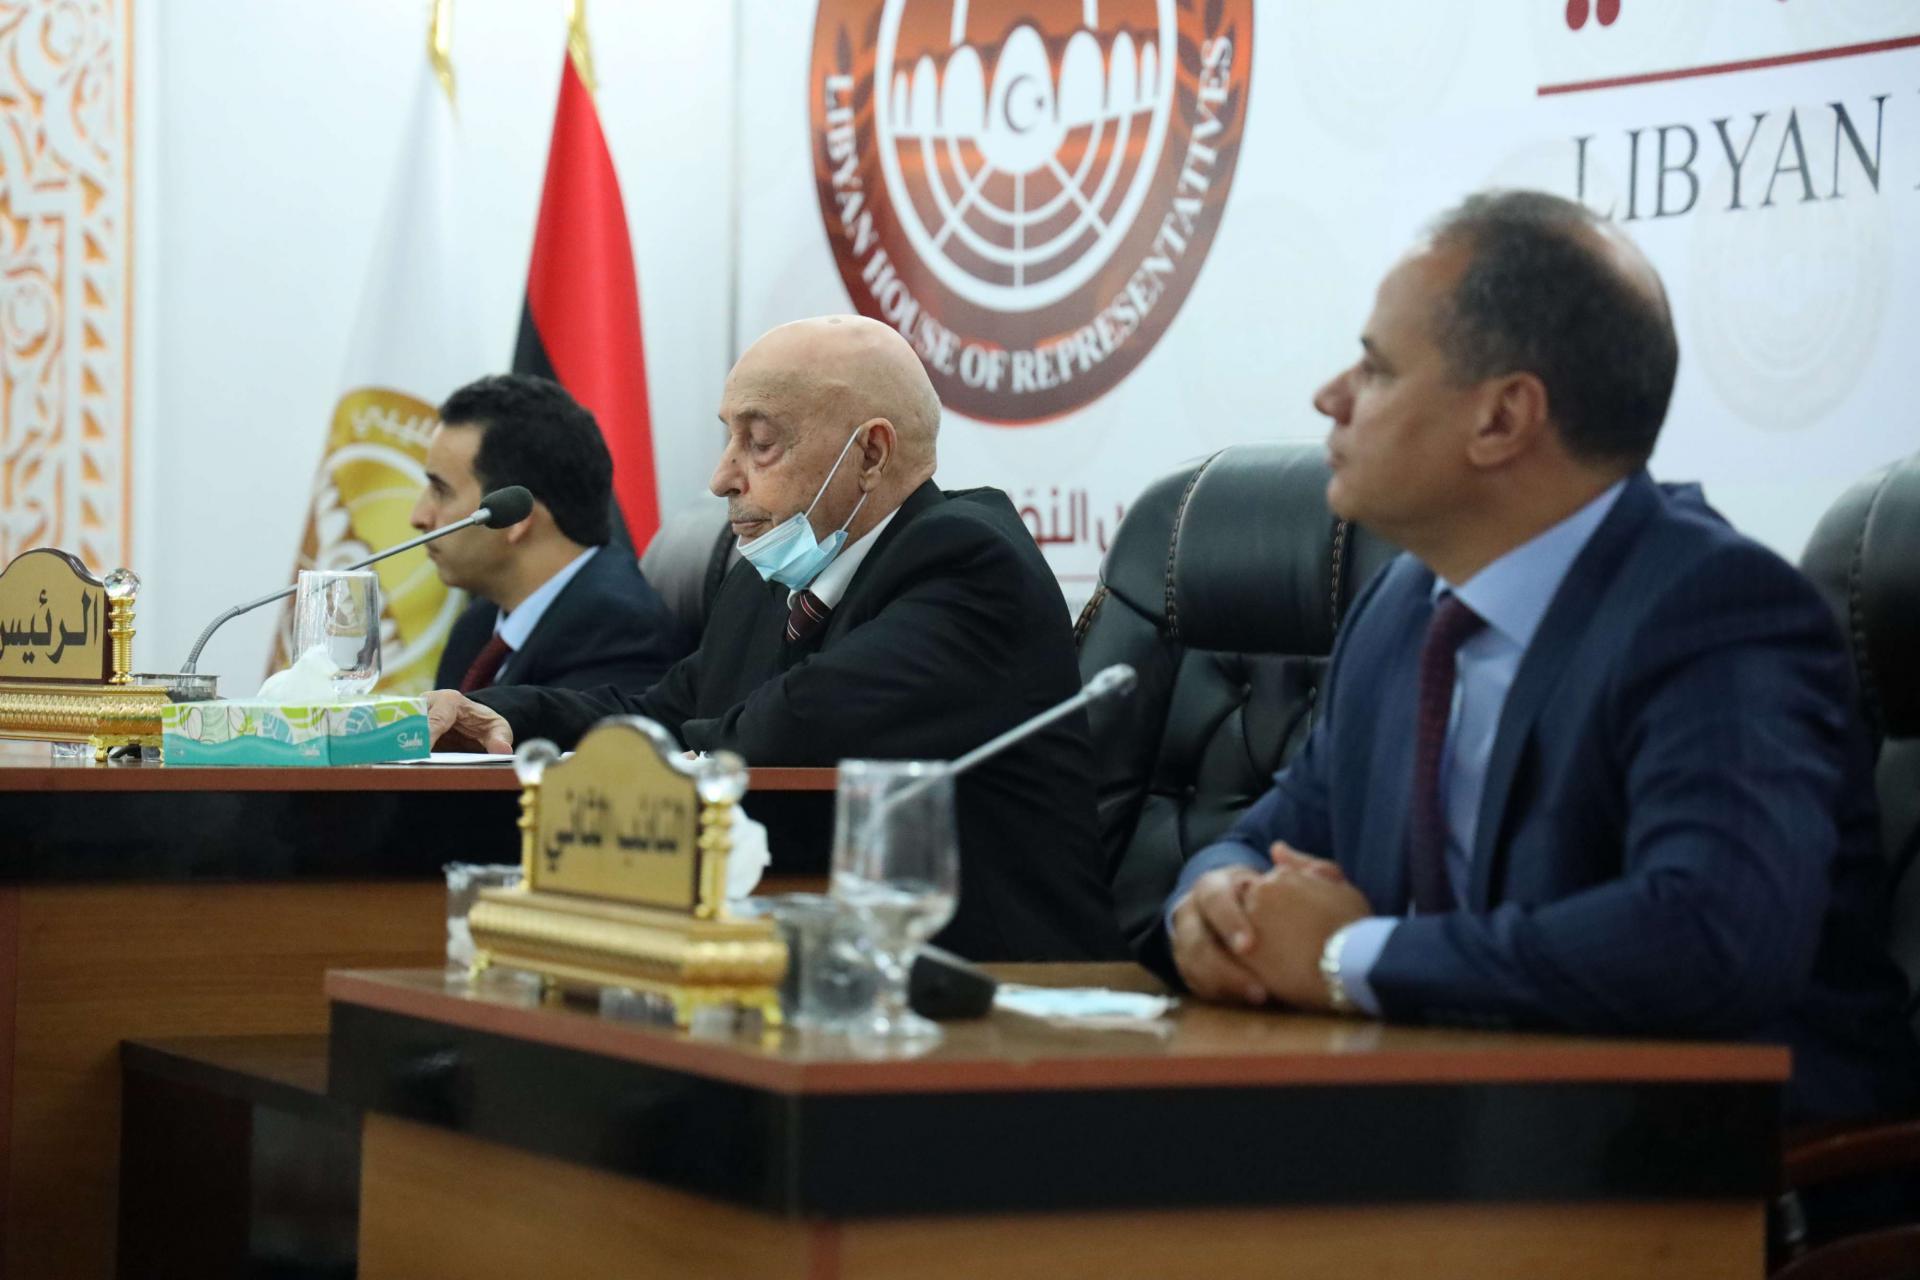 فشل اللقاء بين صالح والمشري سيؤثر على مفاوضات اللجنة المشتركة المجتمعة في القاهرة